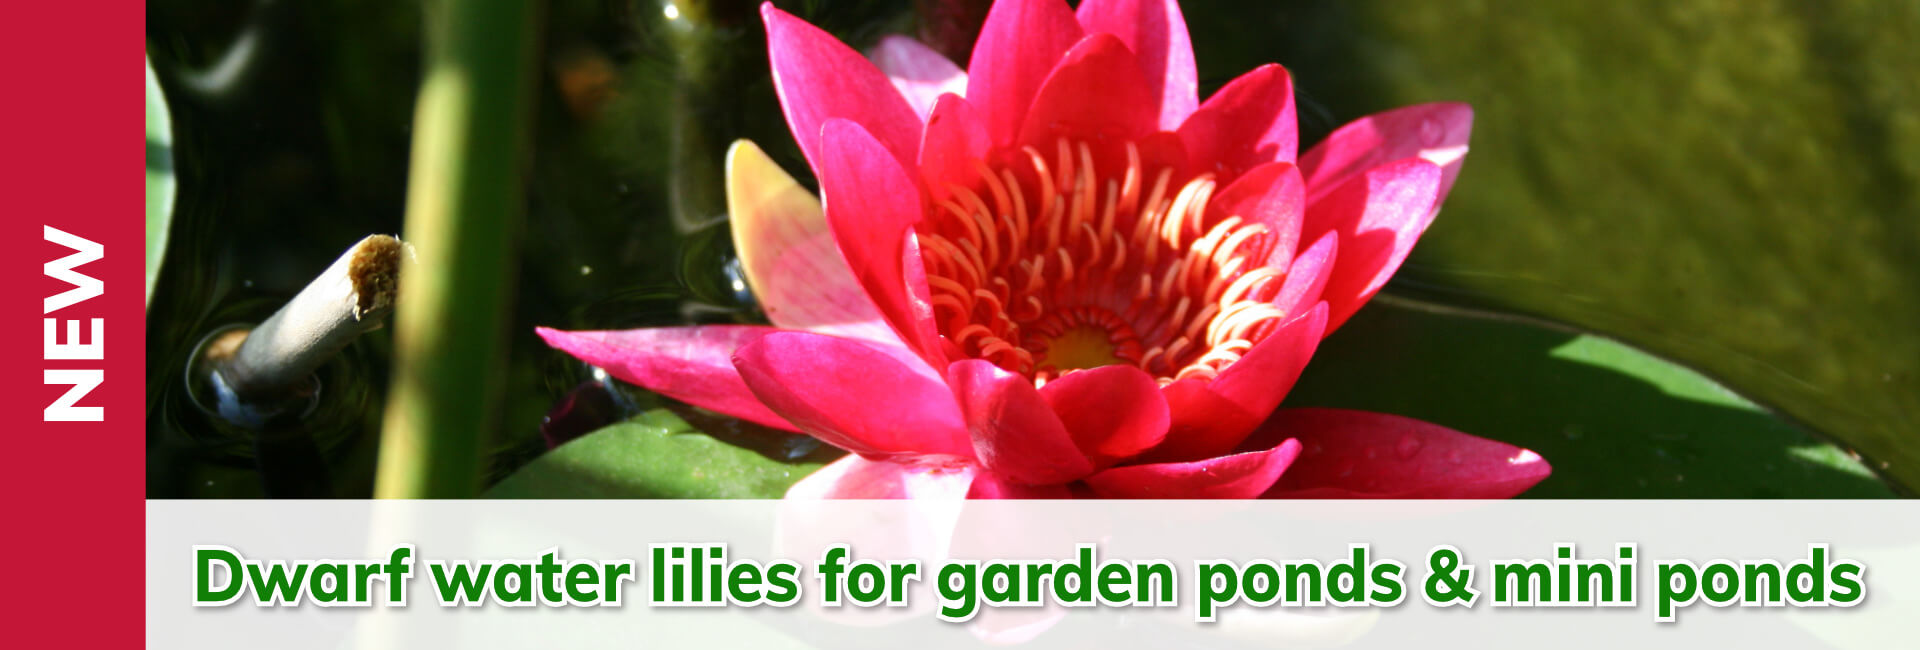 Dwarf water lilies for garden ponds & mini ponds